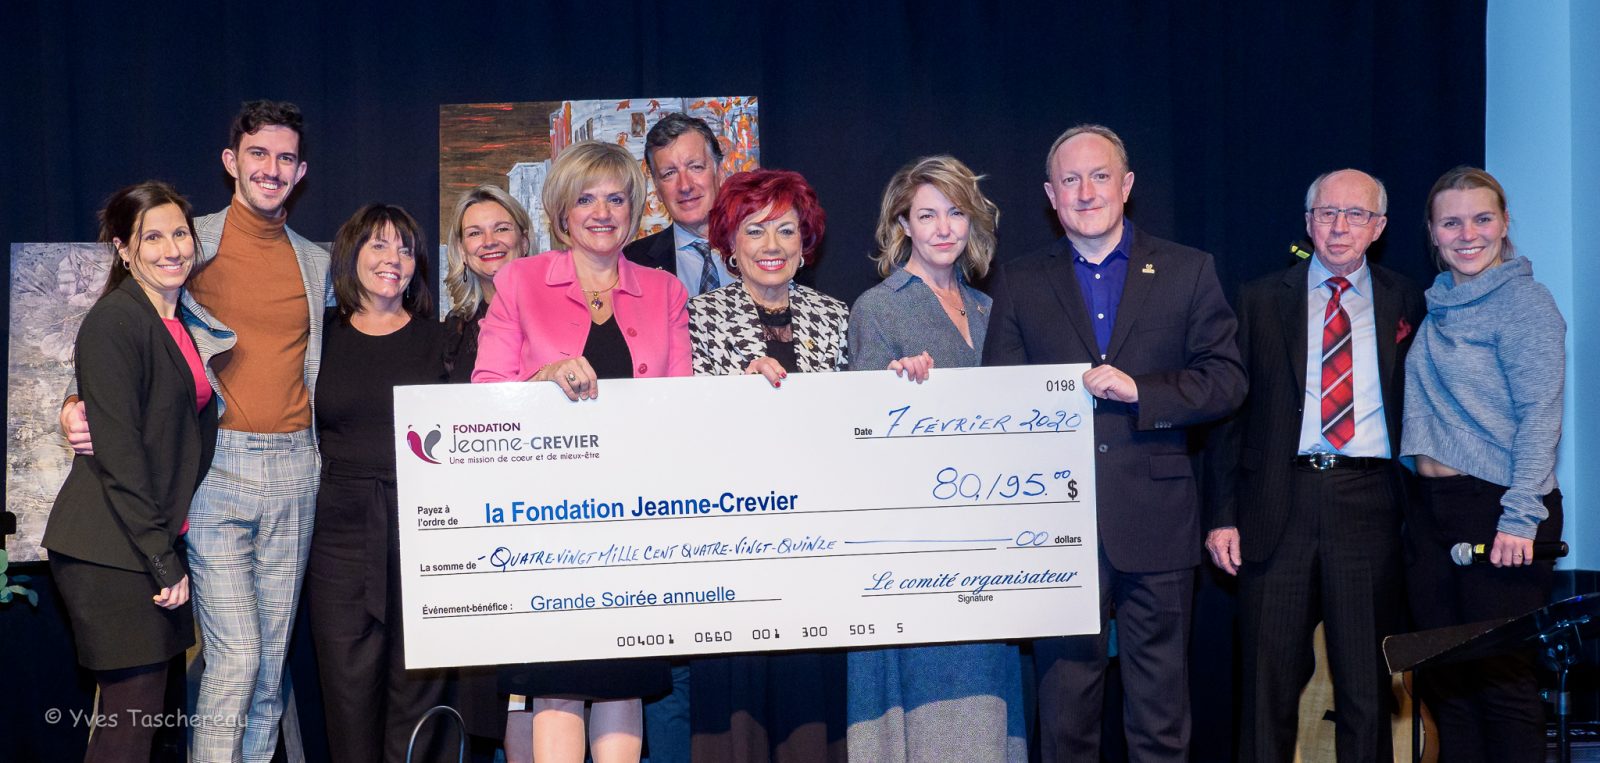 La Grande soirée de la Fondation Jeanne-Crevier rapporte 80 195 $